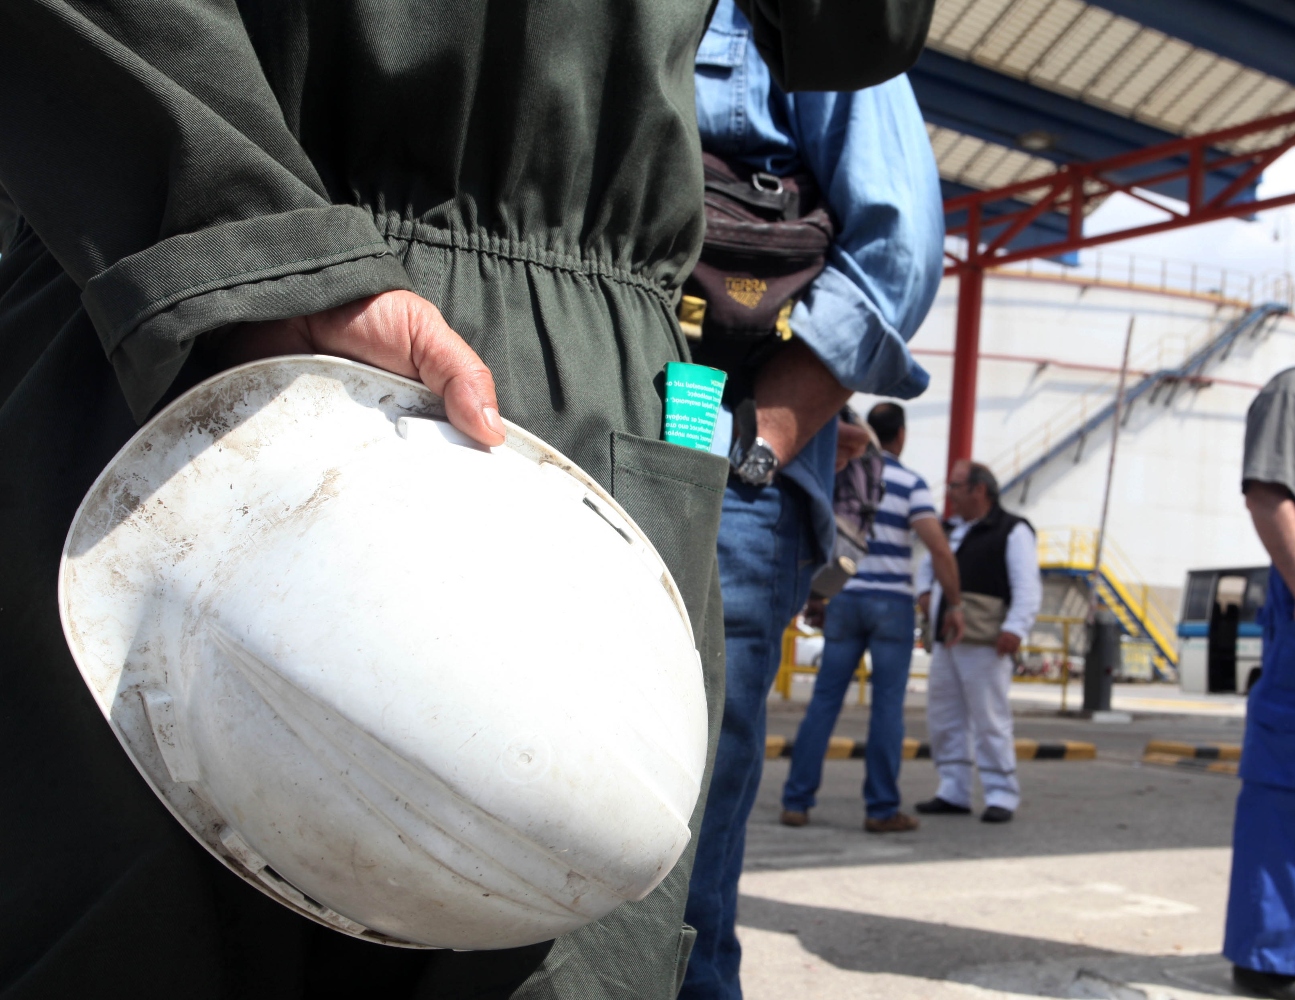 Λάρισα: Σοβαρό εργατικό ατύχημα σε εργοστάσιο αλουμινίου